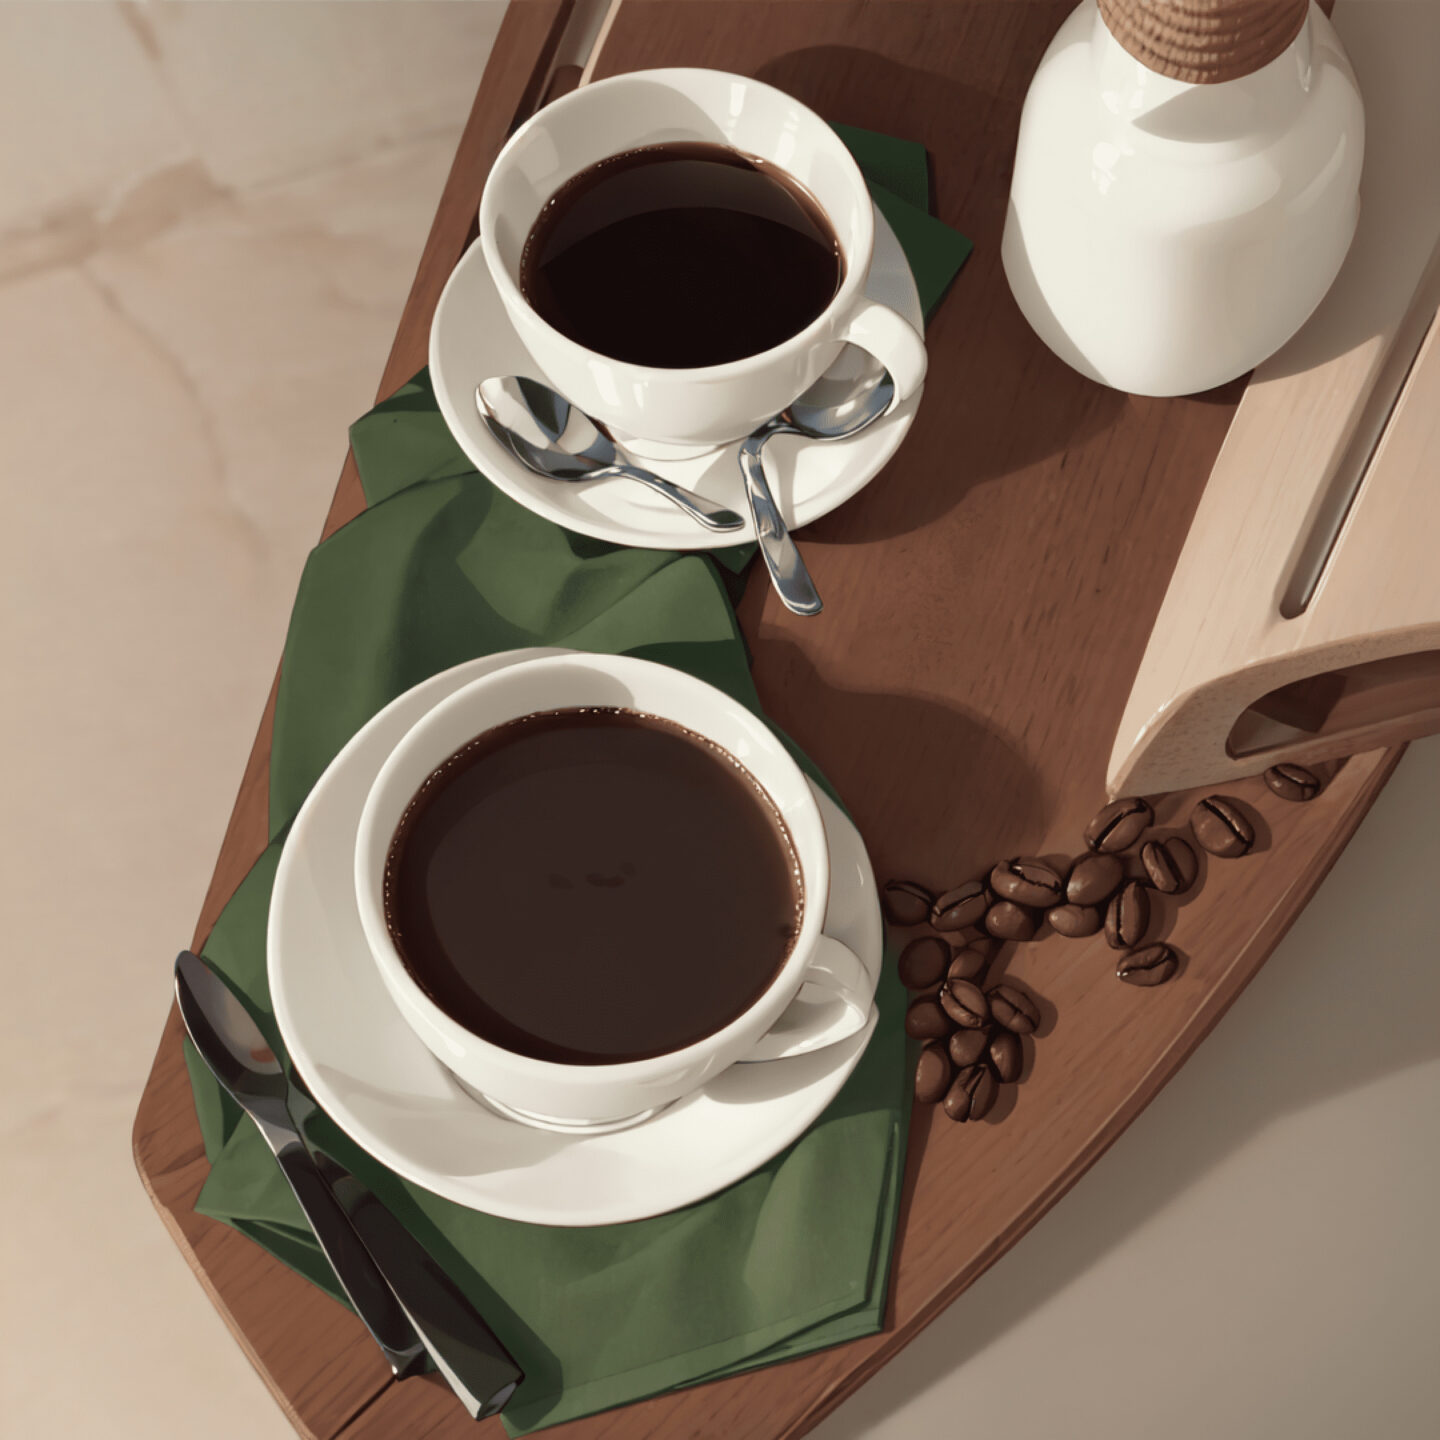 снизить стоимость рассылки изображения Stable Diffusion чашки с кофе